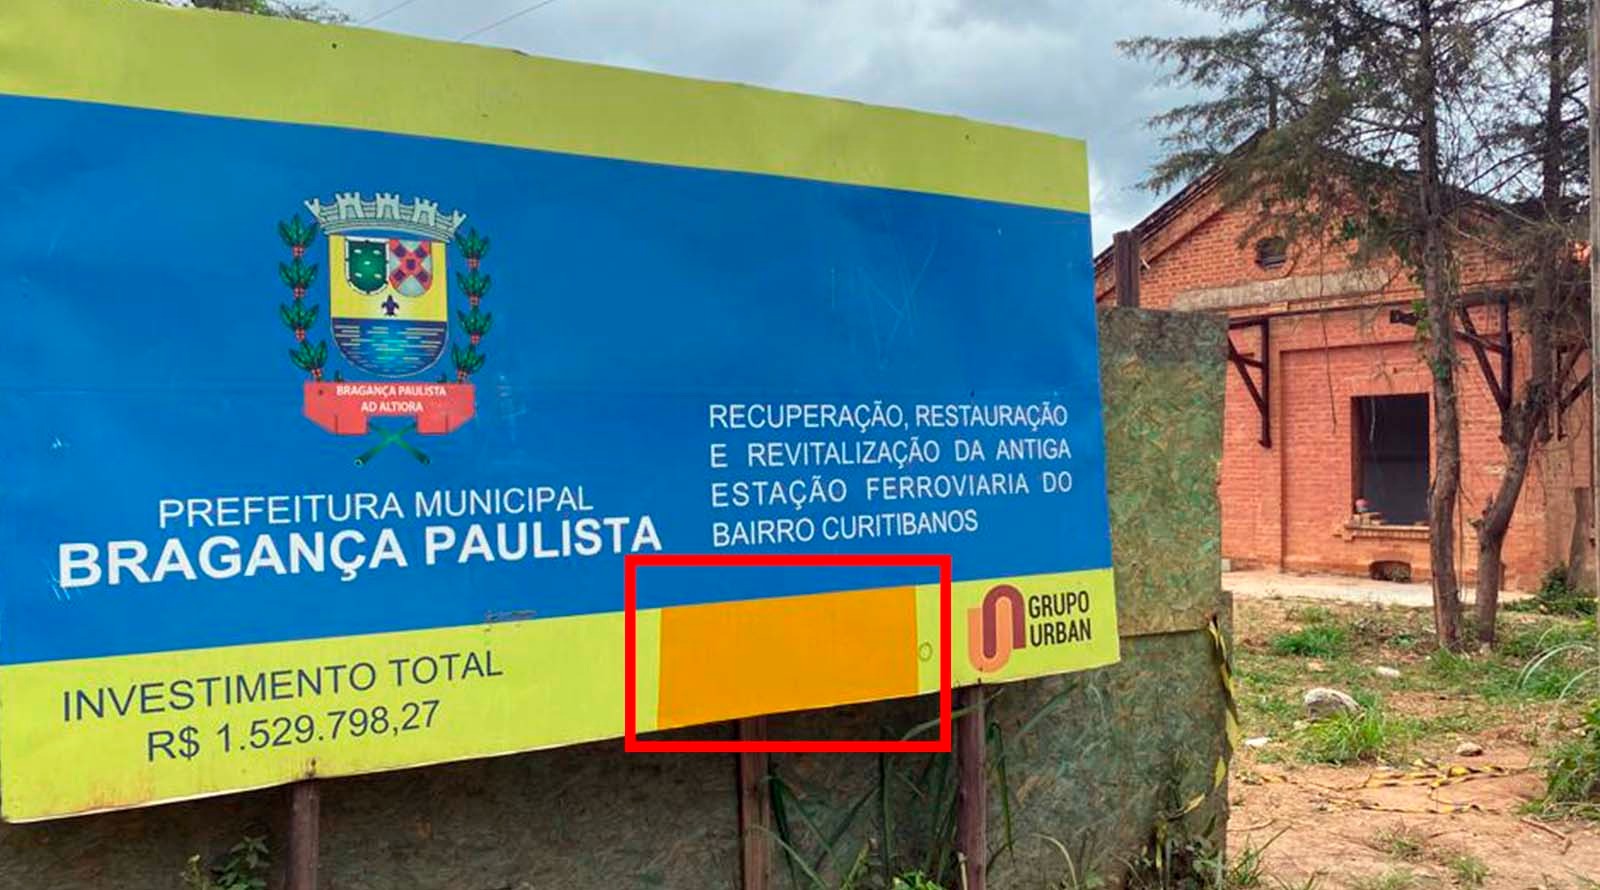 Prefeitura de Bragança apaga prazos em placas de obras públicas